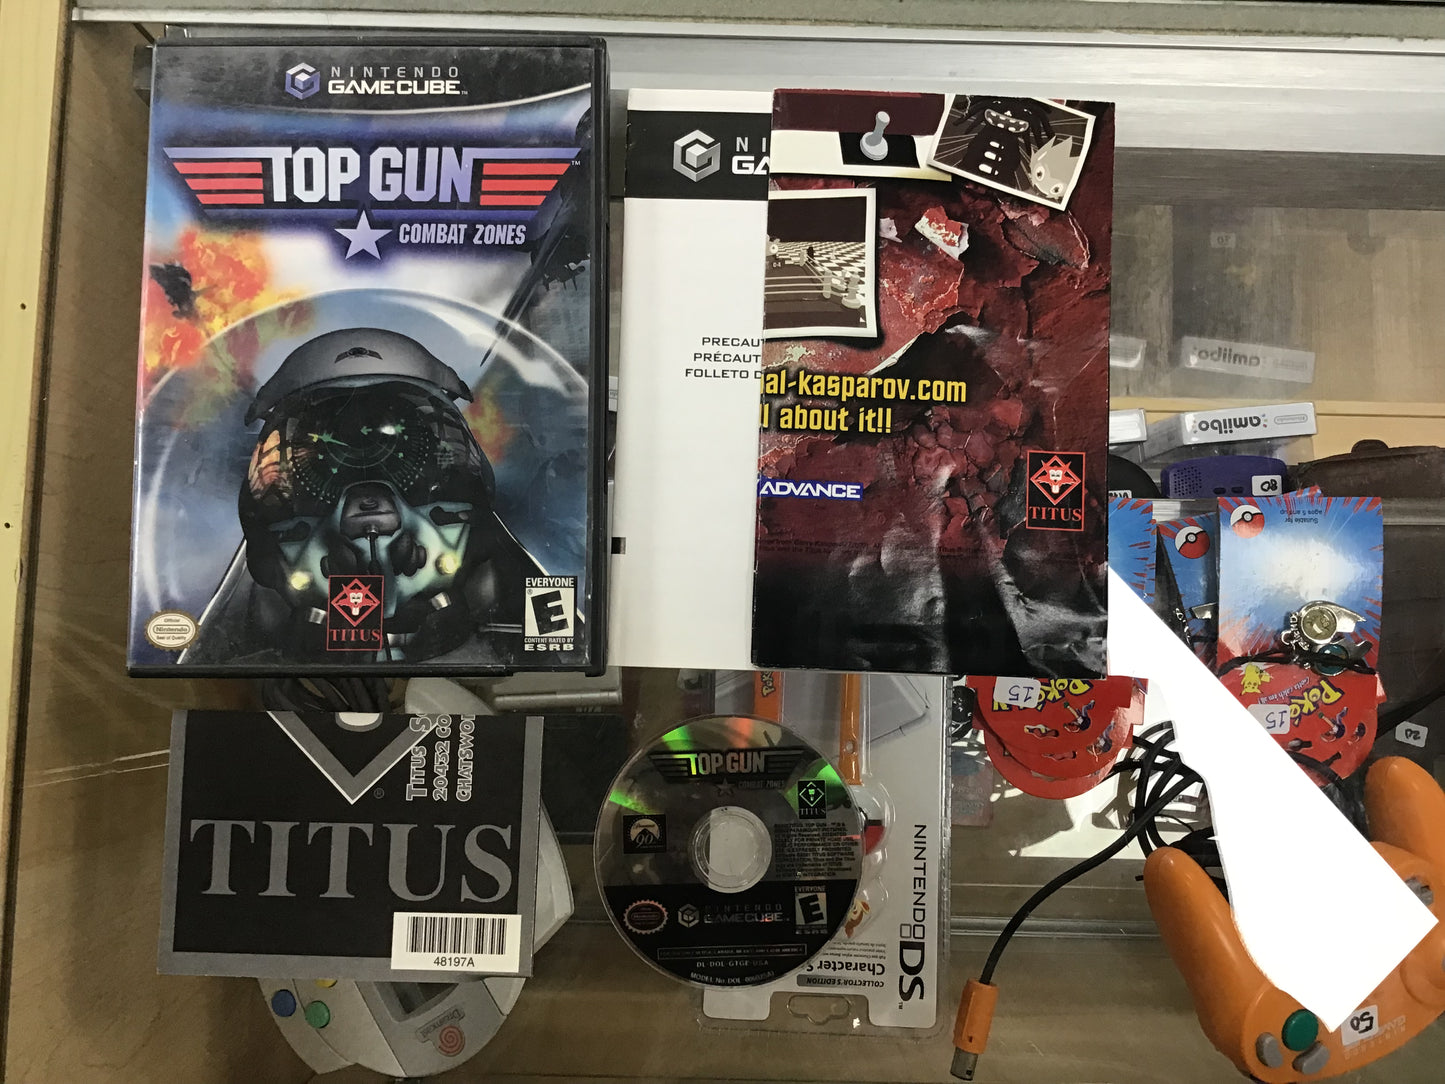 Top Gun Combat Zones (Titus) with Inserts Nintendo GameCube